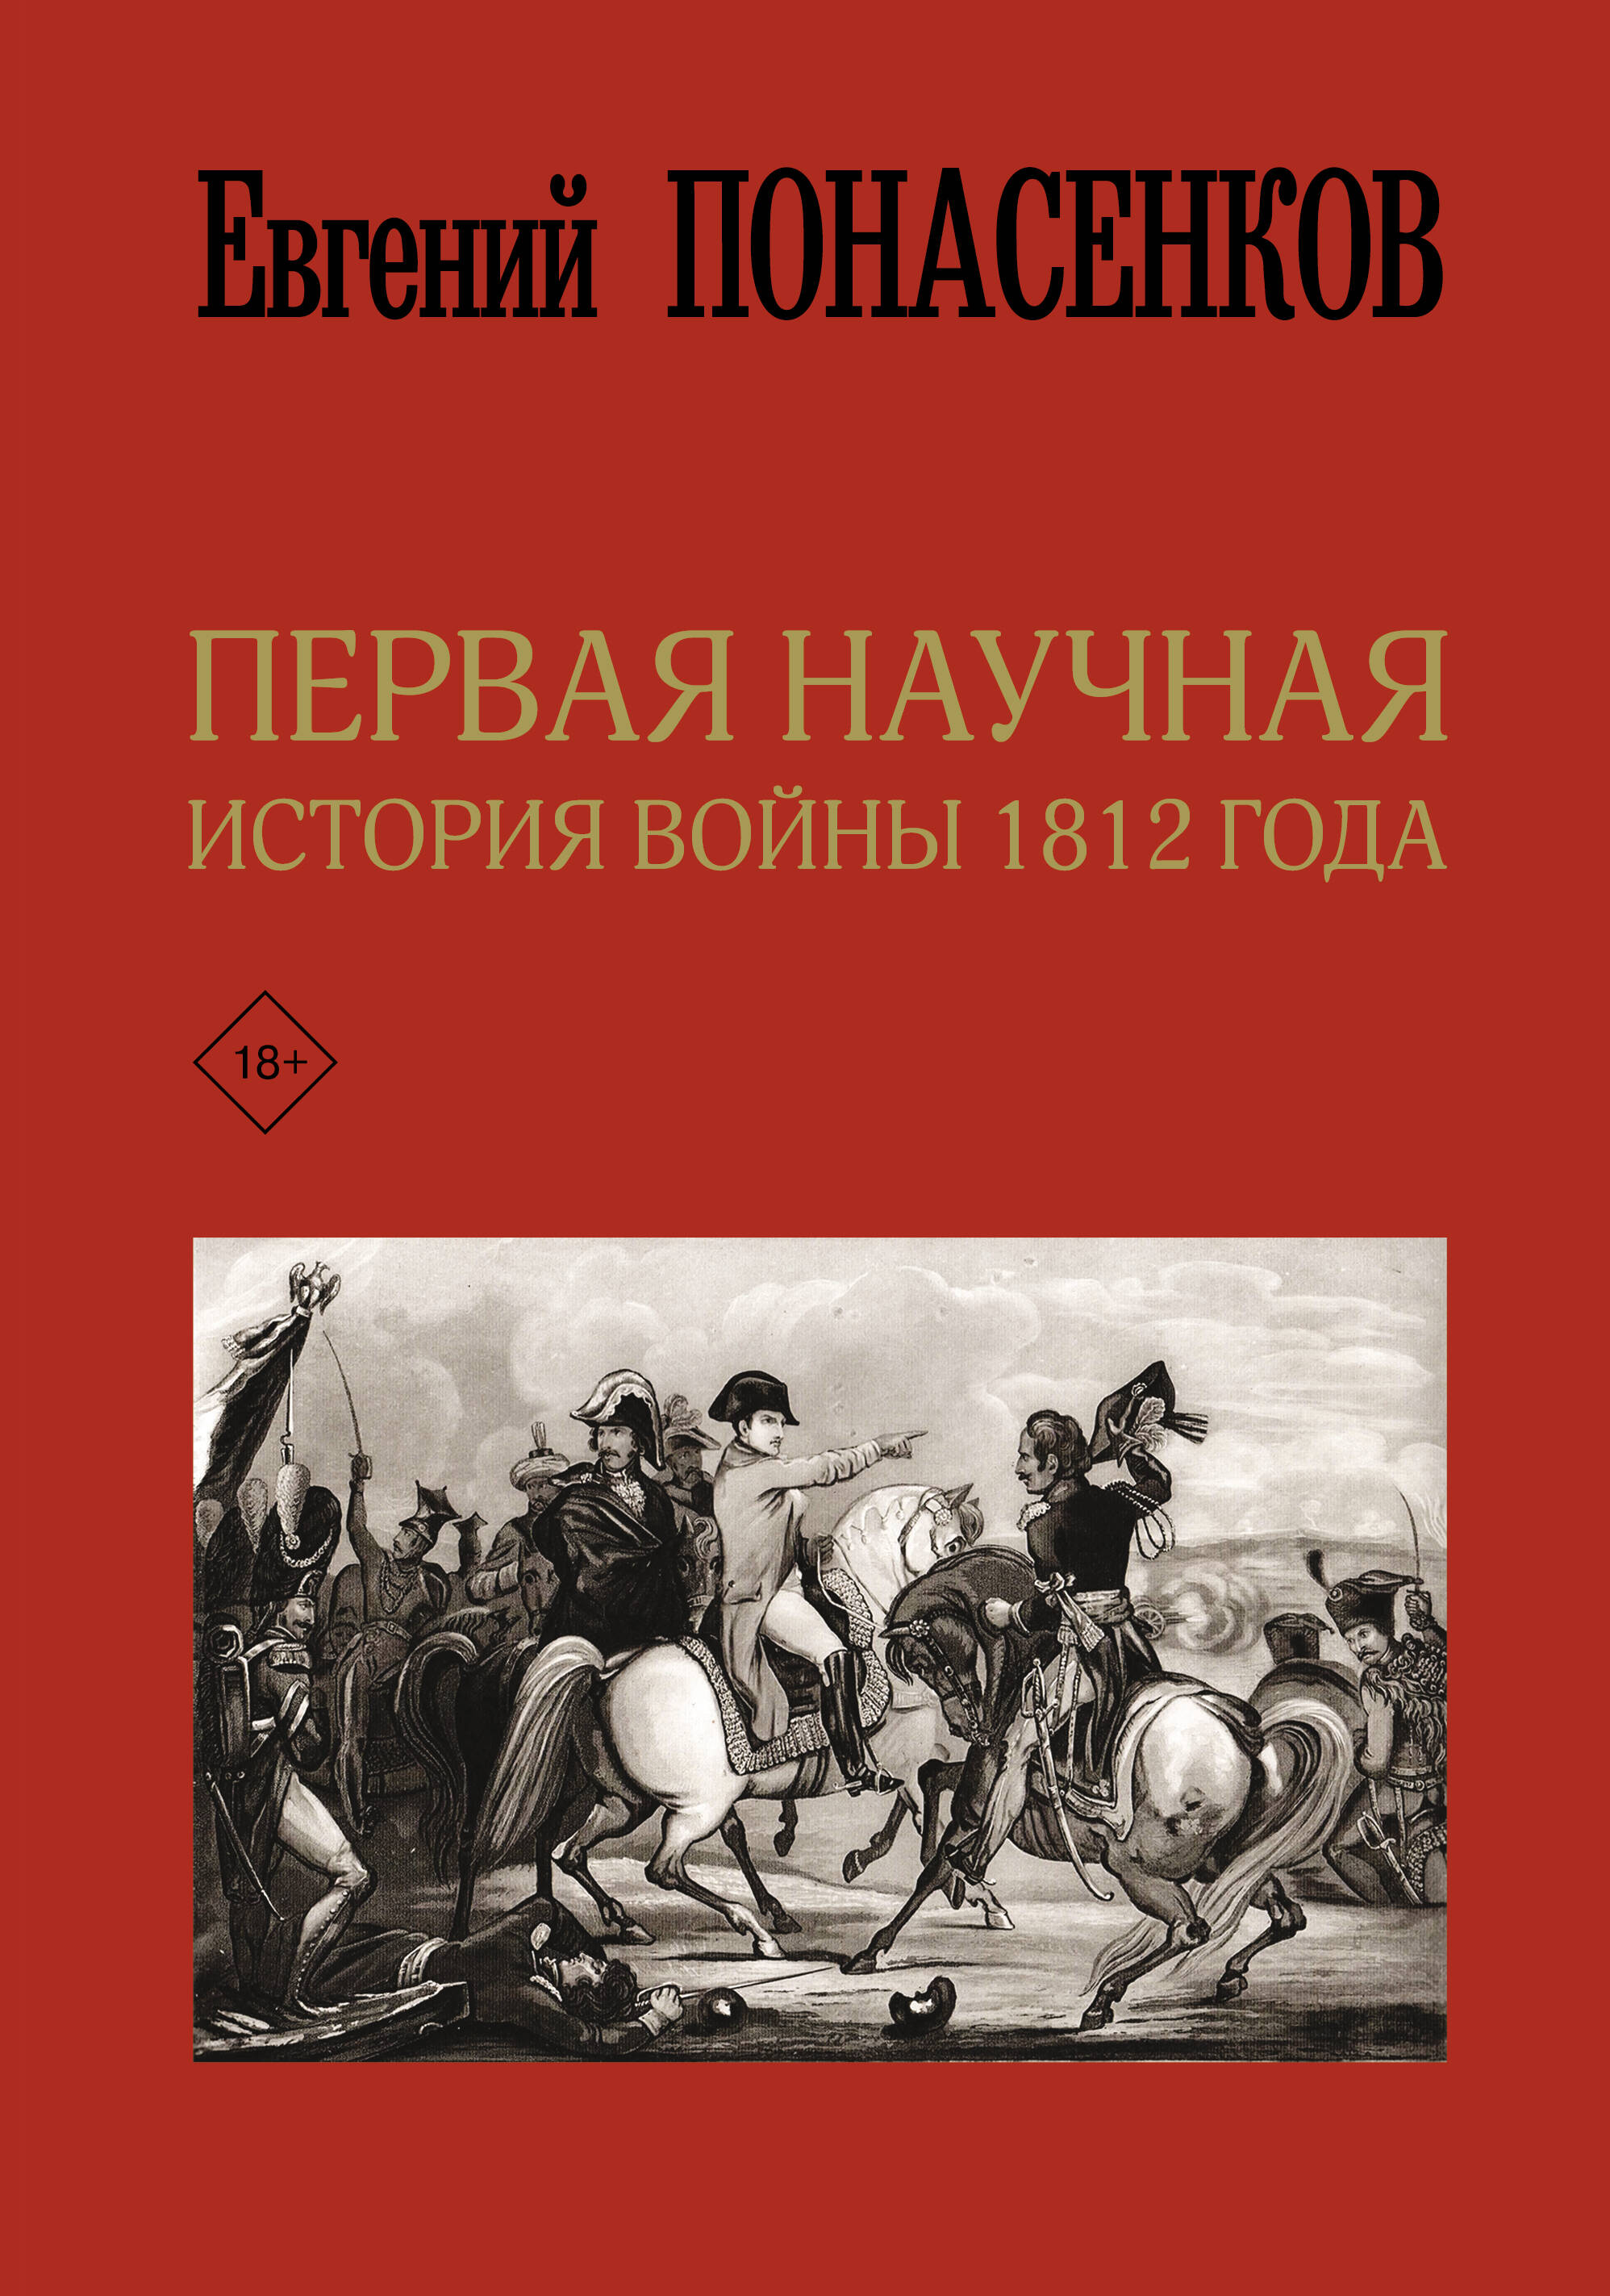 Понасенков Евгений Николаевич Первая научная история войны 1812 года. Третье издание - страница 0